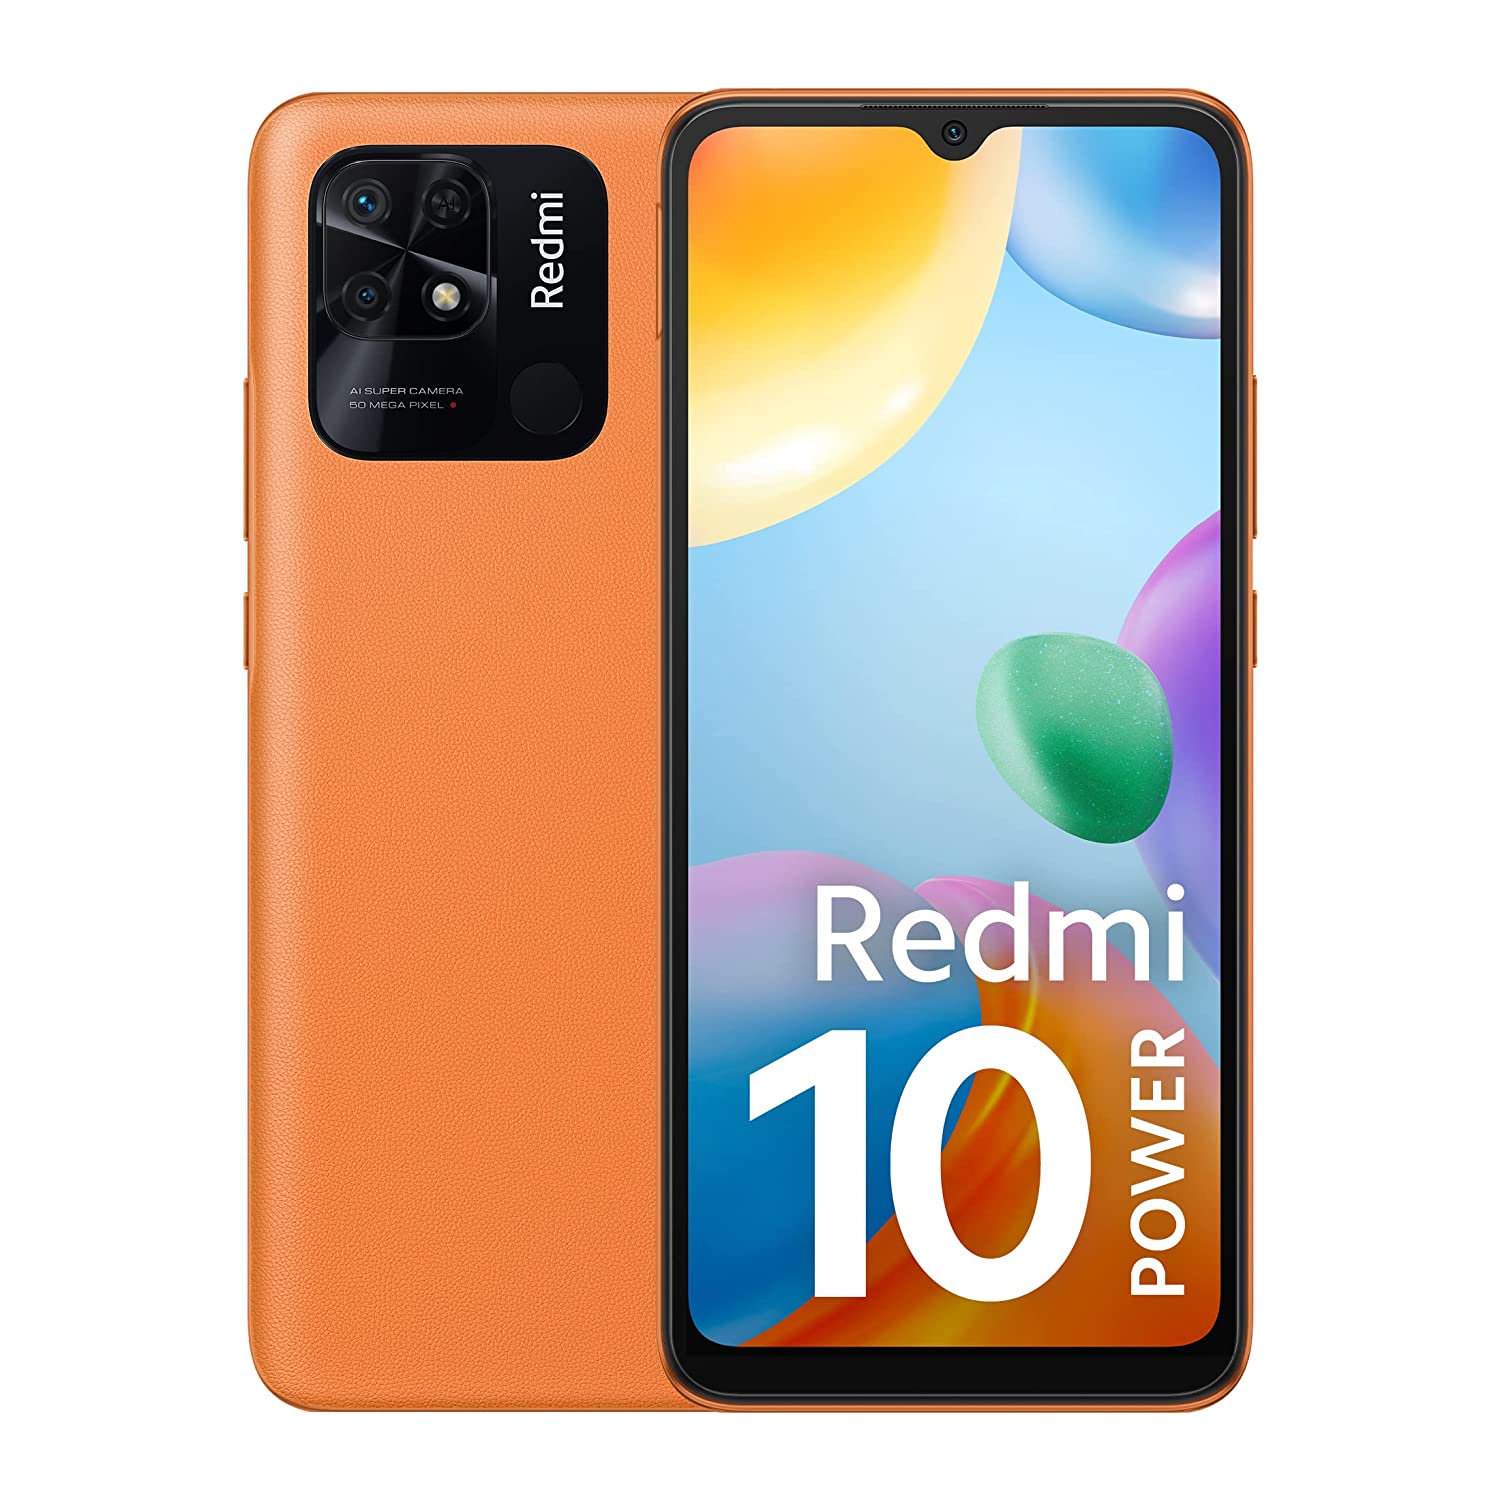 Redmi के इस न्यू लॉन्च फोन में मम्मी-पापा की पसंद के हैं फीचर्स, कीमत सिर्फ 12 हजार